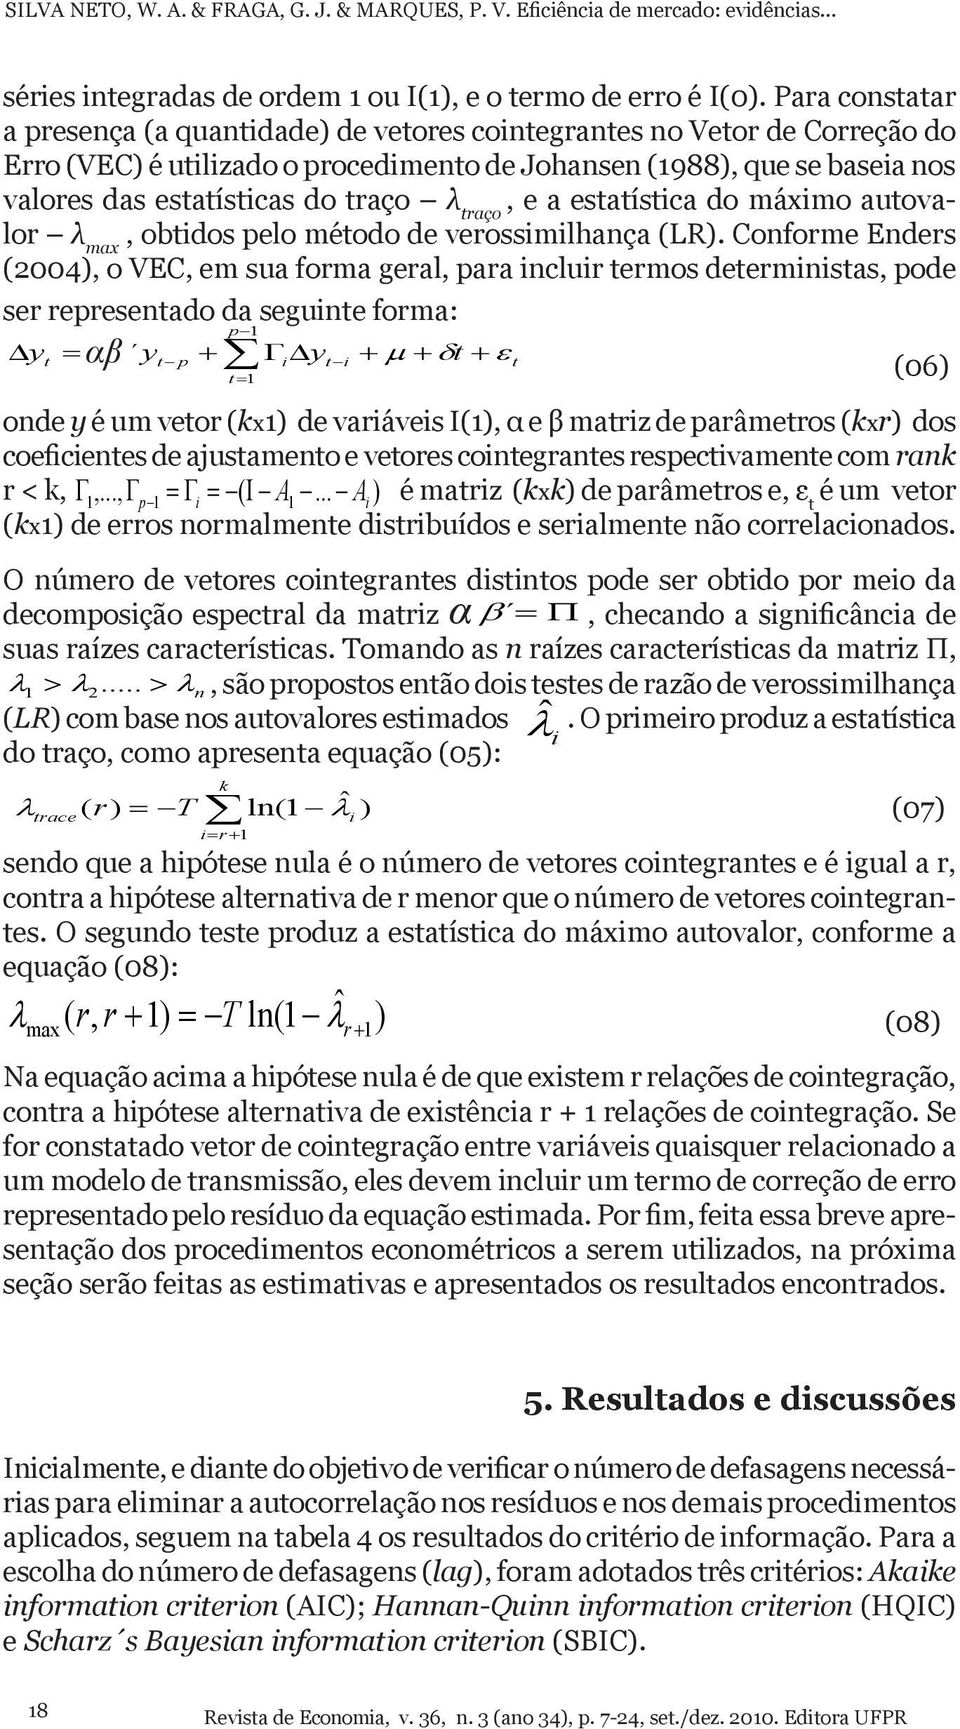 λ traço, e a estatística do máximo autovalor λ max, obtidos pelo método de verossimilhança (LR).